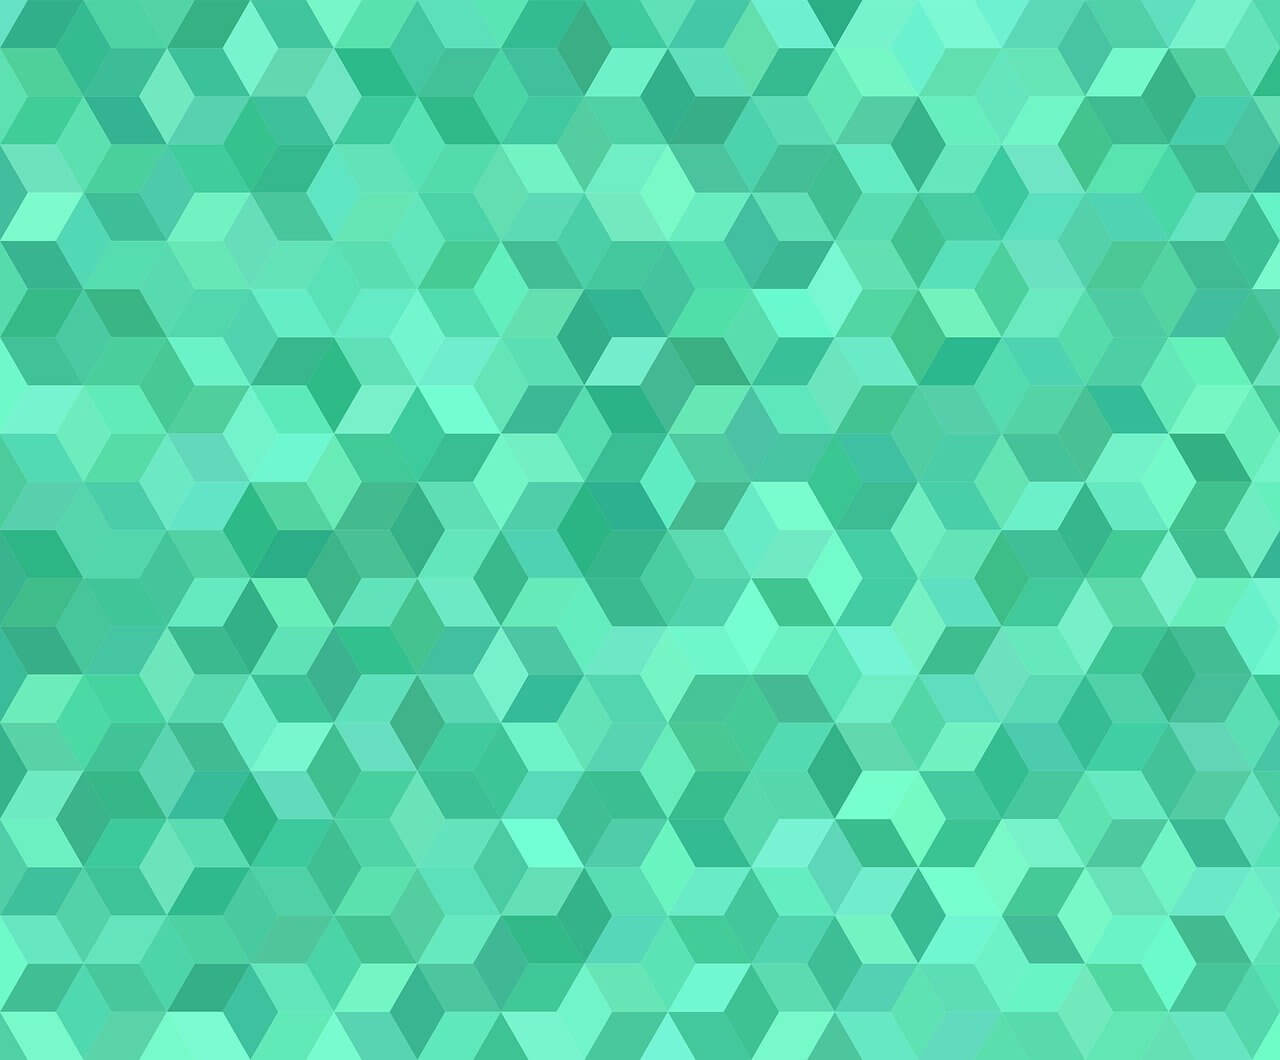 Mosaic green pattern